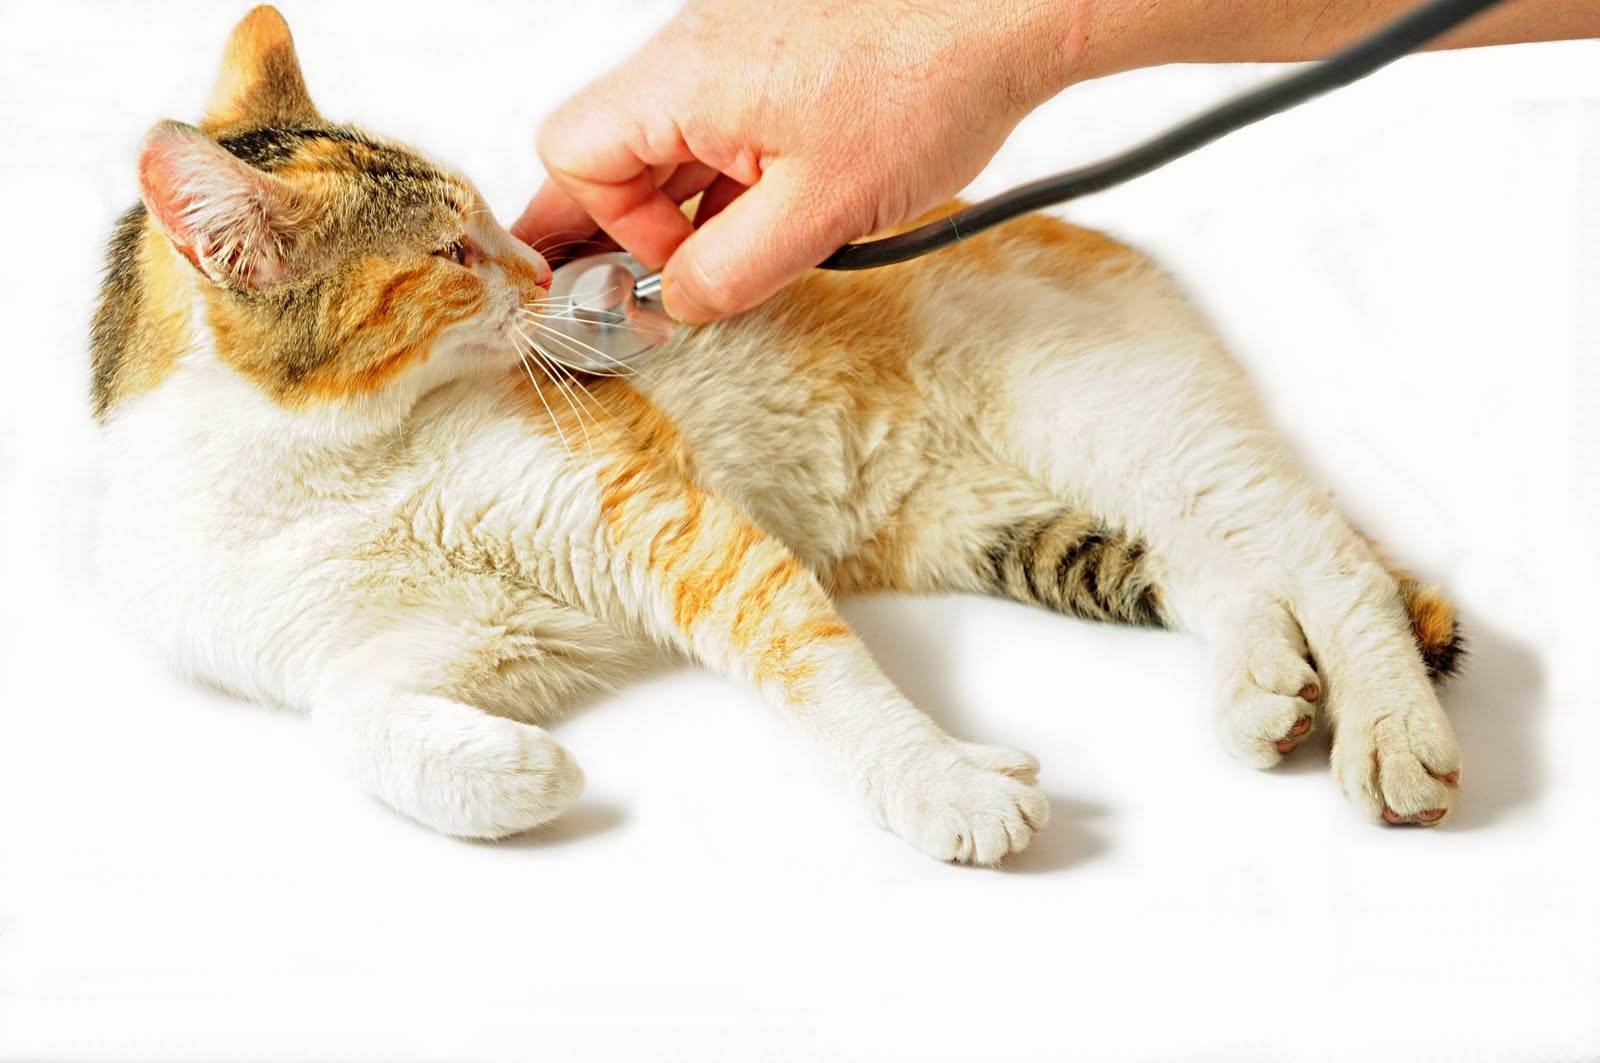 Отравление у кошки: ядами, бытовой химией, продуктами, цветами. симптомы, лечение